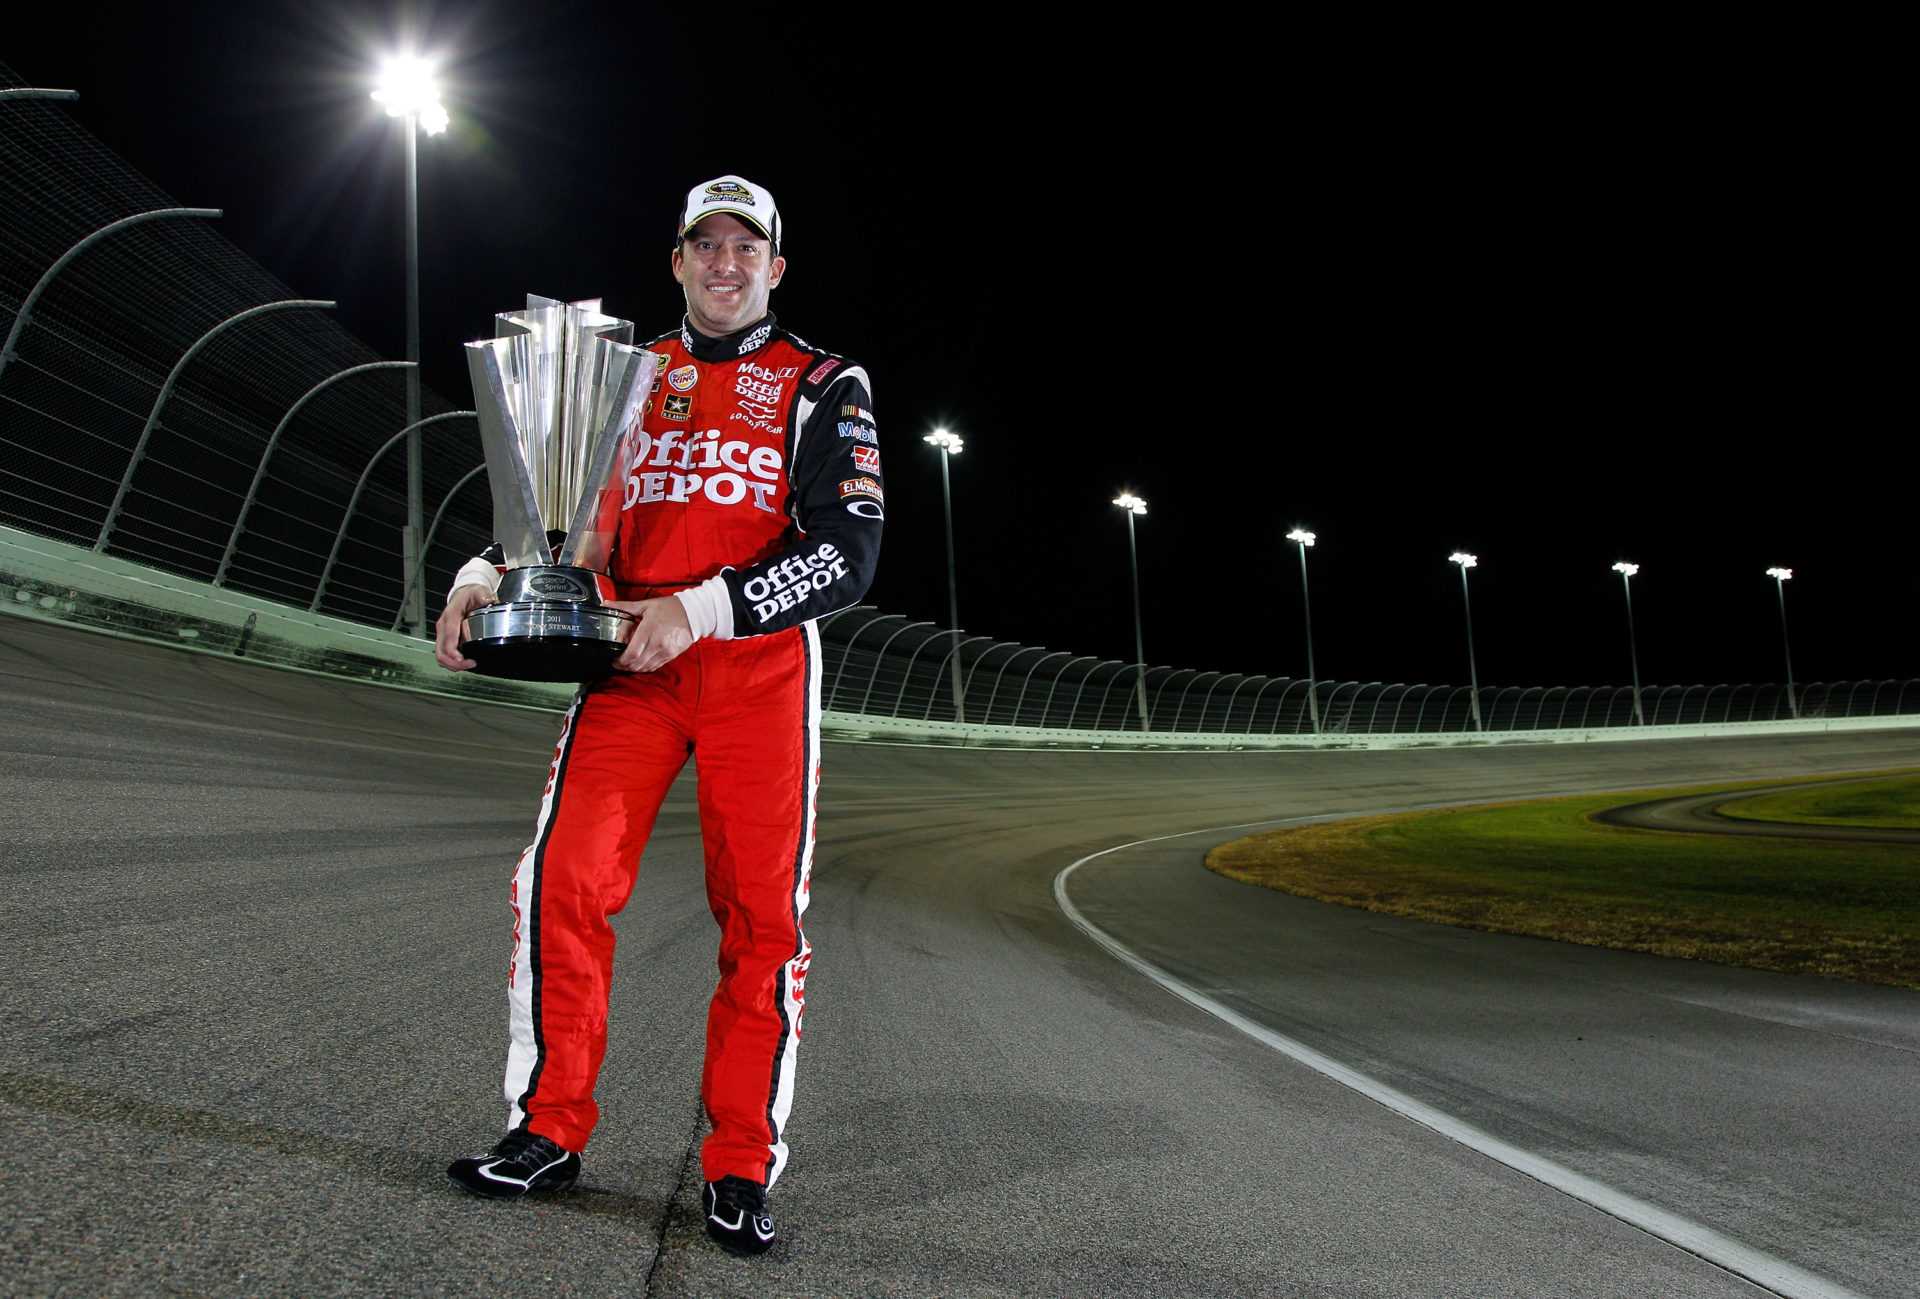 La légende de NASCAR Tony Stewart remporte la première grande victoire de la saison 2021 dans un événement de voiture de vitesse